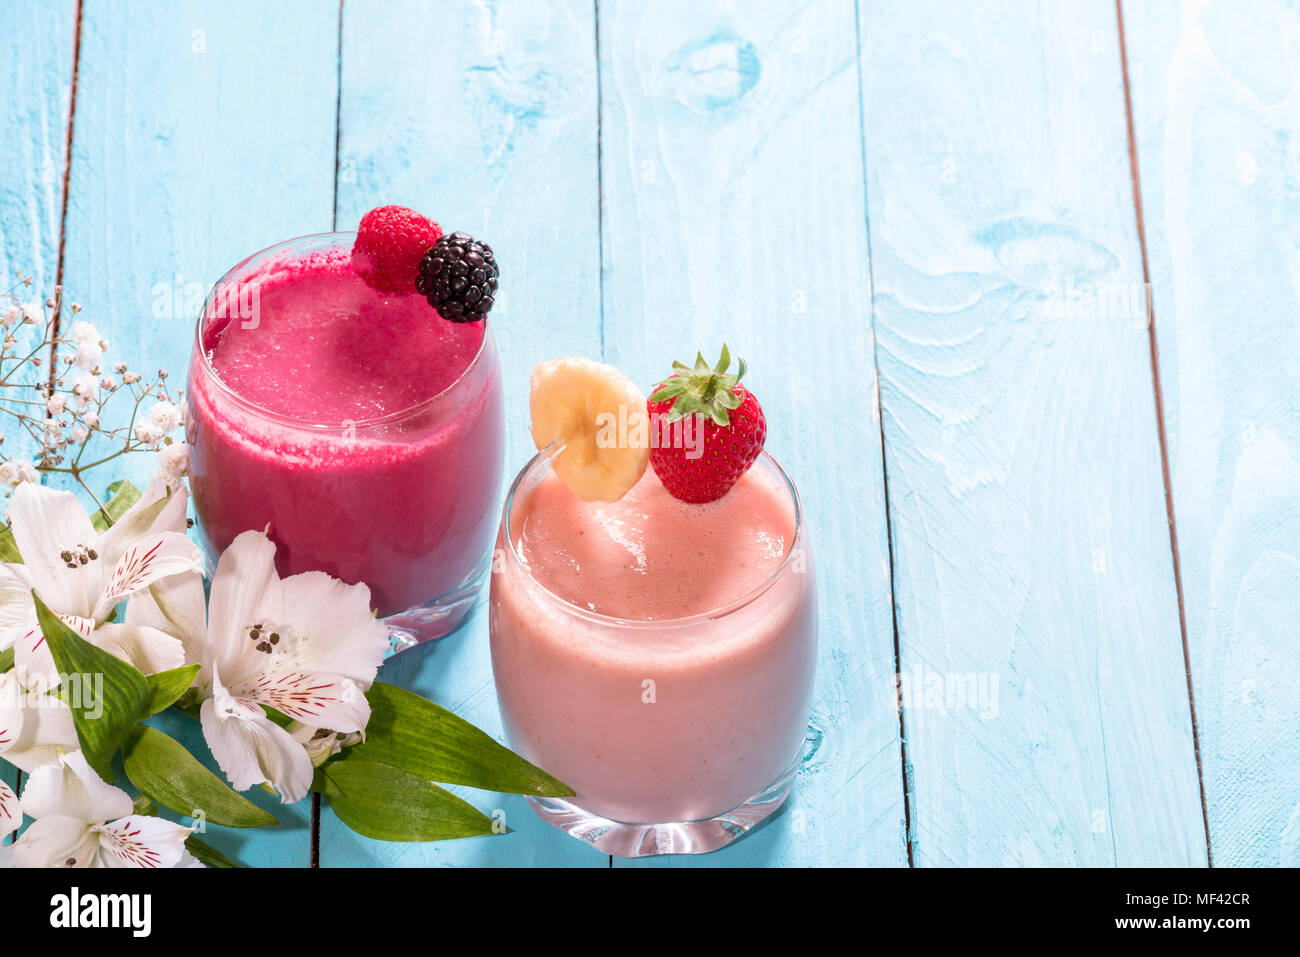 Frühstück mit einem Glas frischen Banane und Erdbeere Smoothie, eines mit Himbeere und Waldbeeren, in der Nähe von weißen Blüten auf blauem Hintergrund. Stockfoto